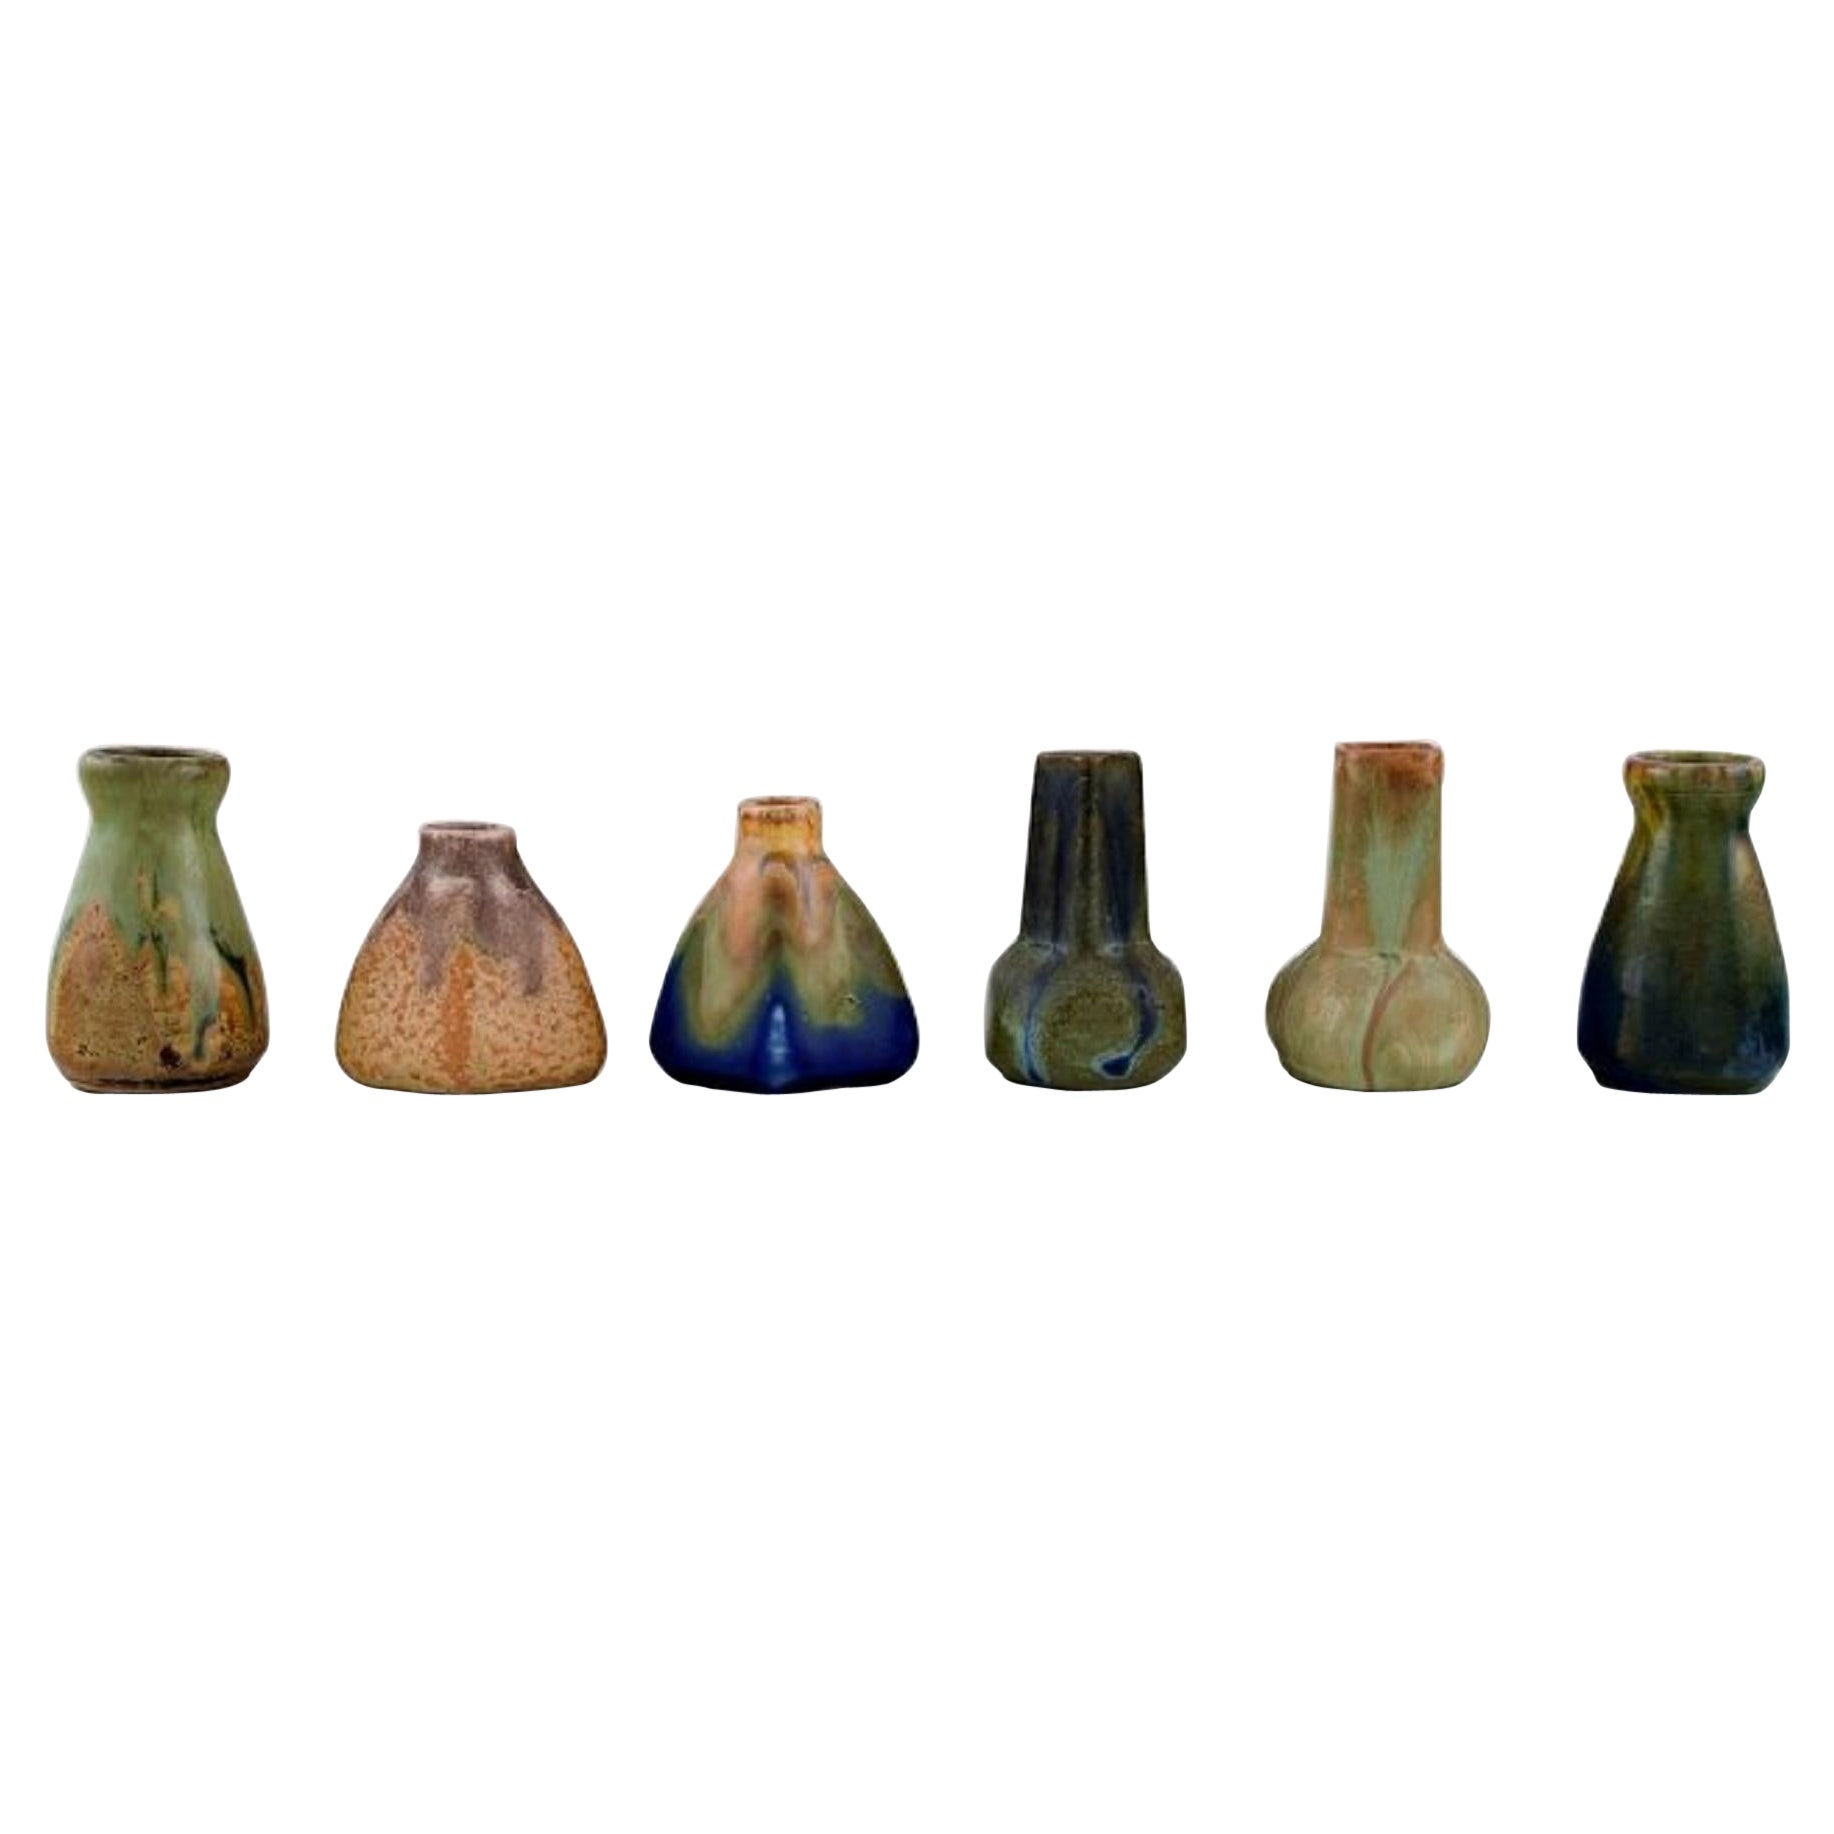 Six Belgian Miniature Vases in Glazed Ceramics, Mid-20th C.